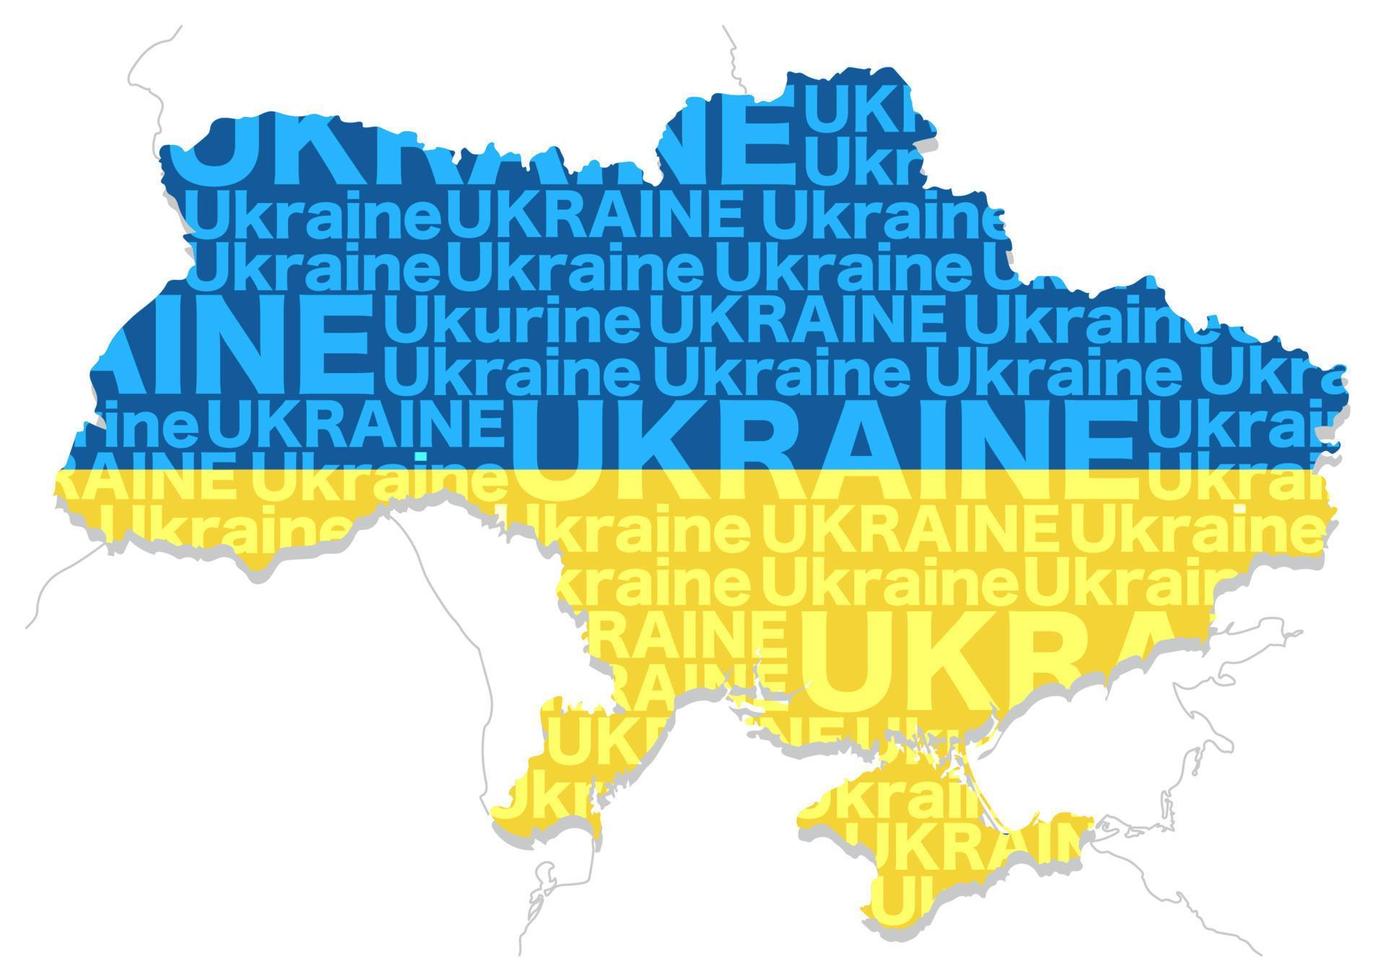 mappa dell'ucraina composta dalla forma della terra, dal nome del paese e dai colori della bandiera nazionale. illustrazione vettoriale isolato su uno sfondo bianco.